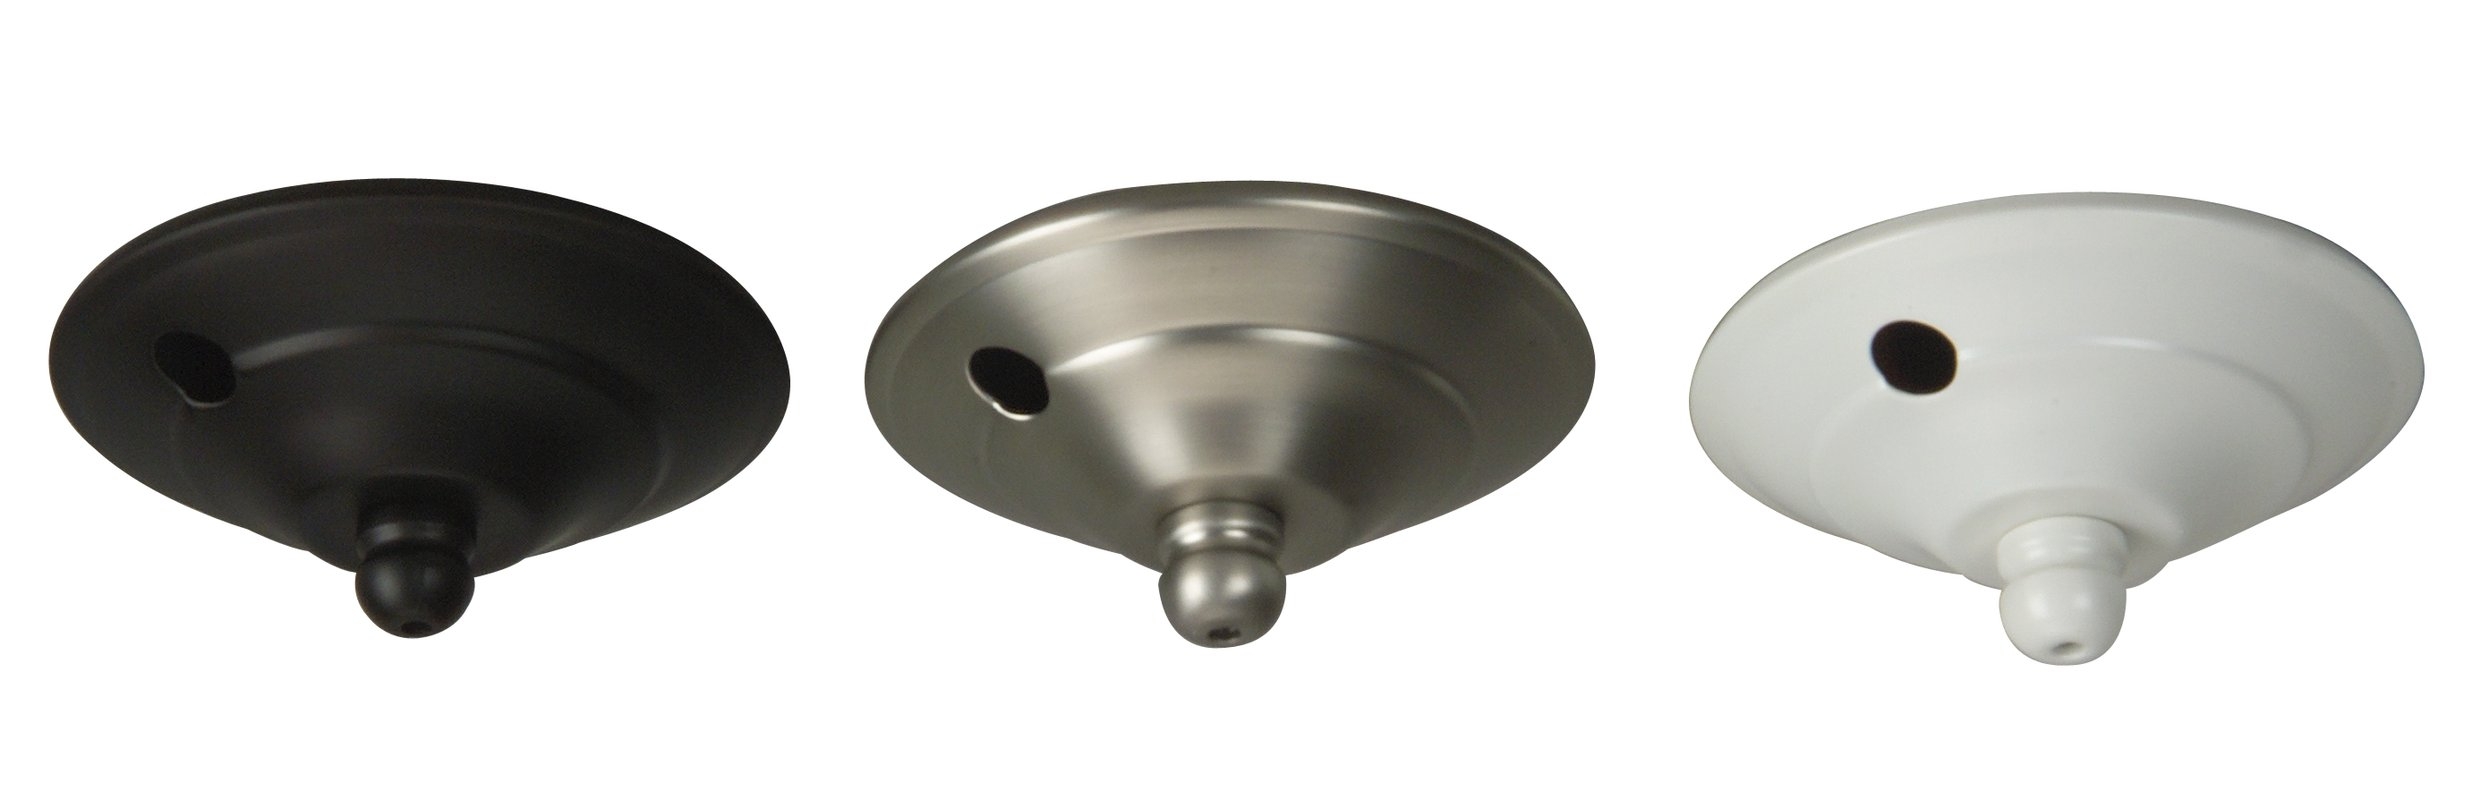 Ceiling Fan Light Cap10 facts about ceiling fan light cap warisan lighting